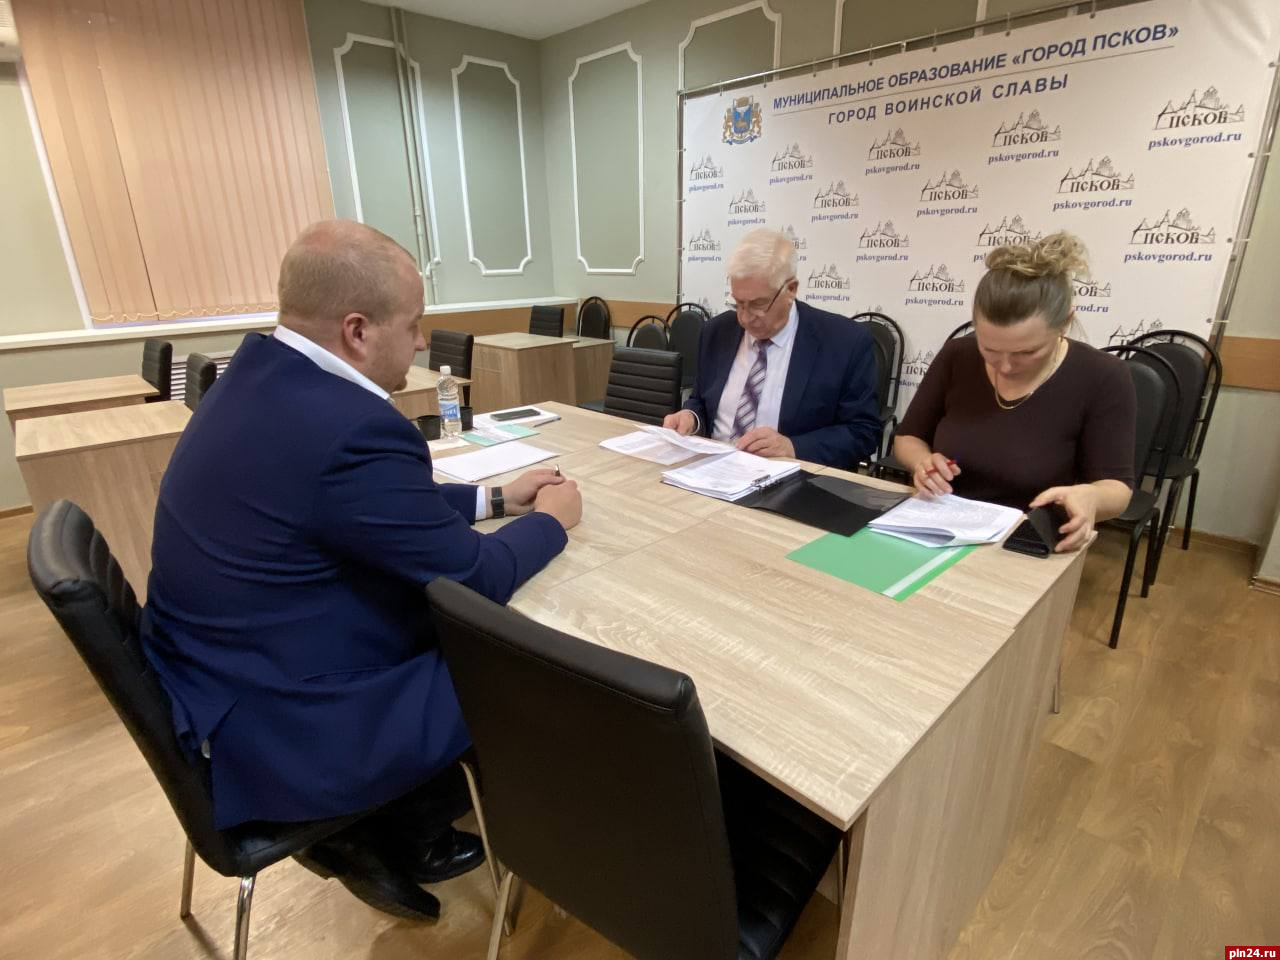 Борис Елкин подал документы на конкурс на замещение должности главы Пскова